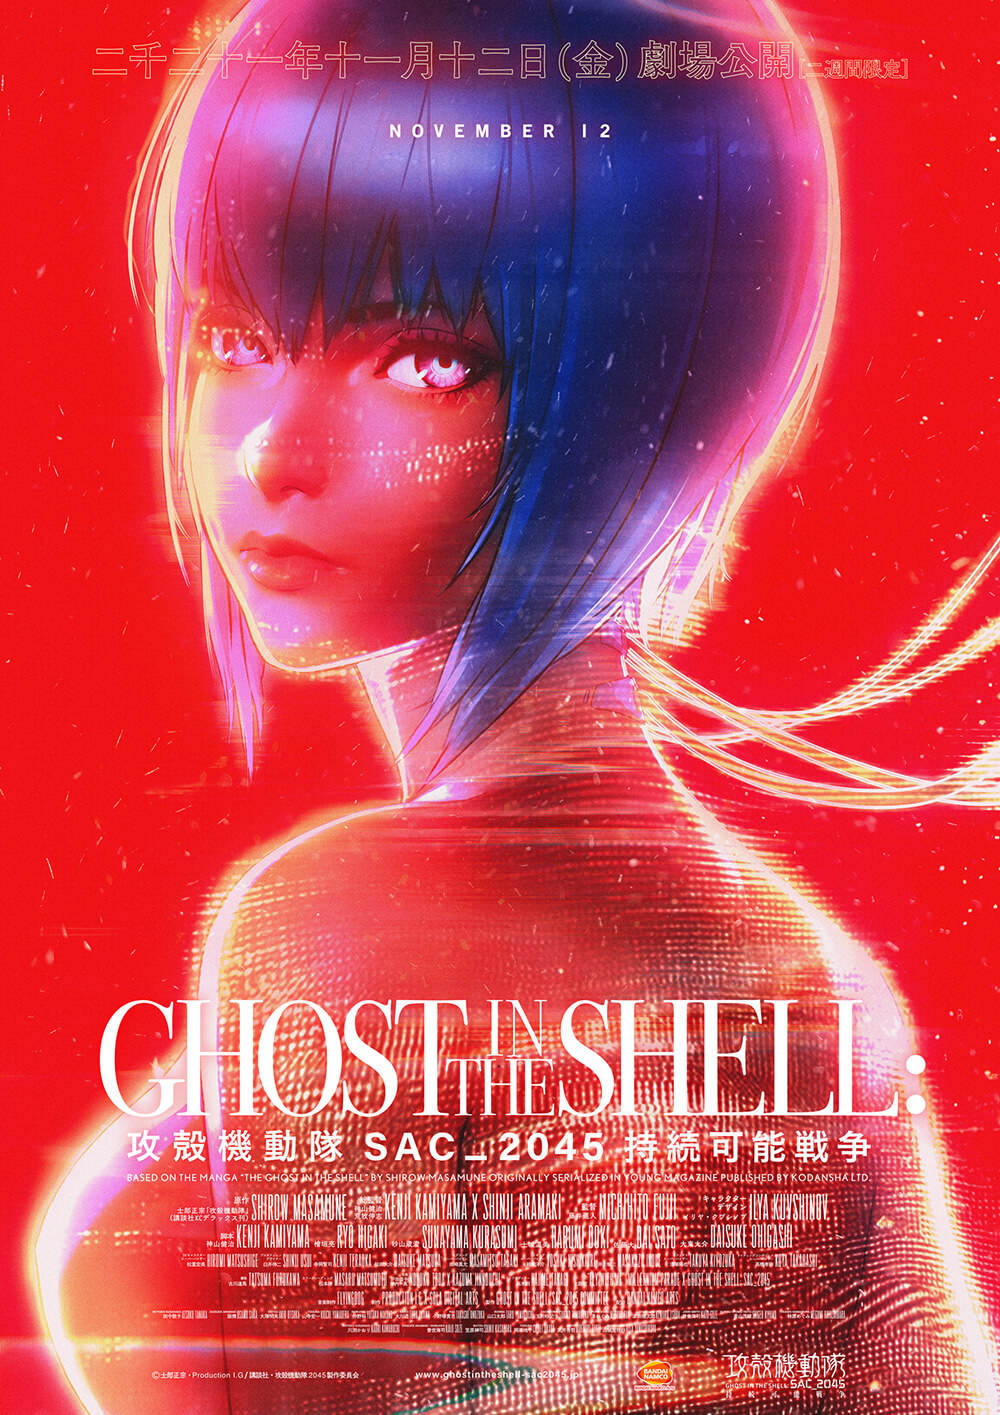 高価値】 GHOST IN poster in THE 【保存版】 SHELL shell / ghost